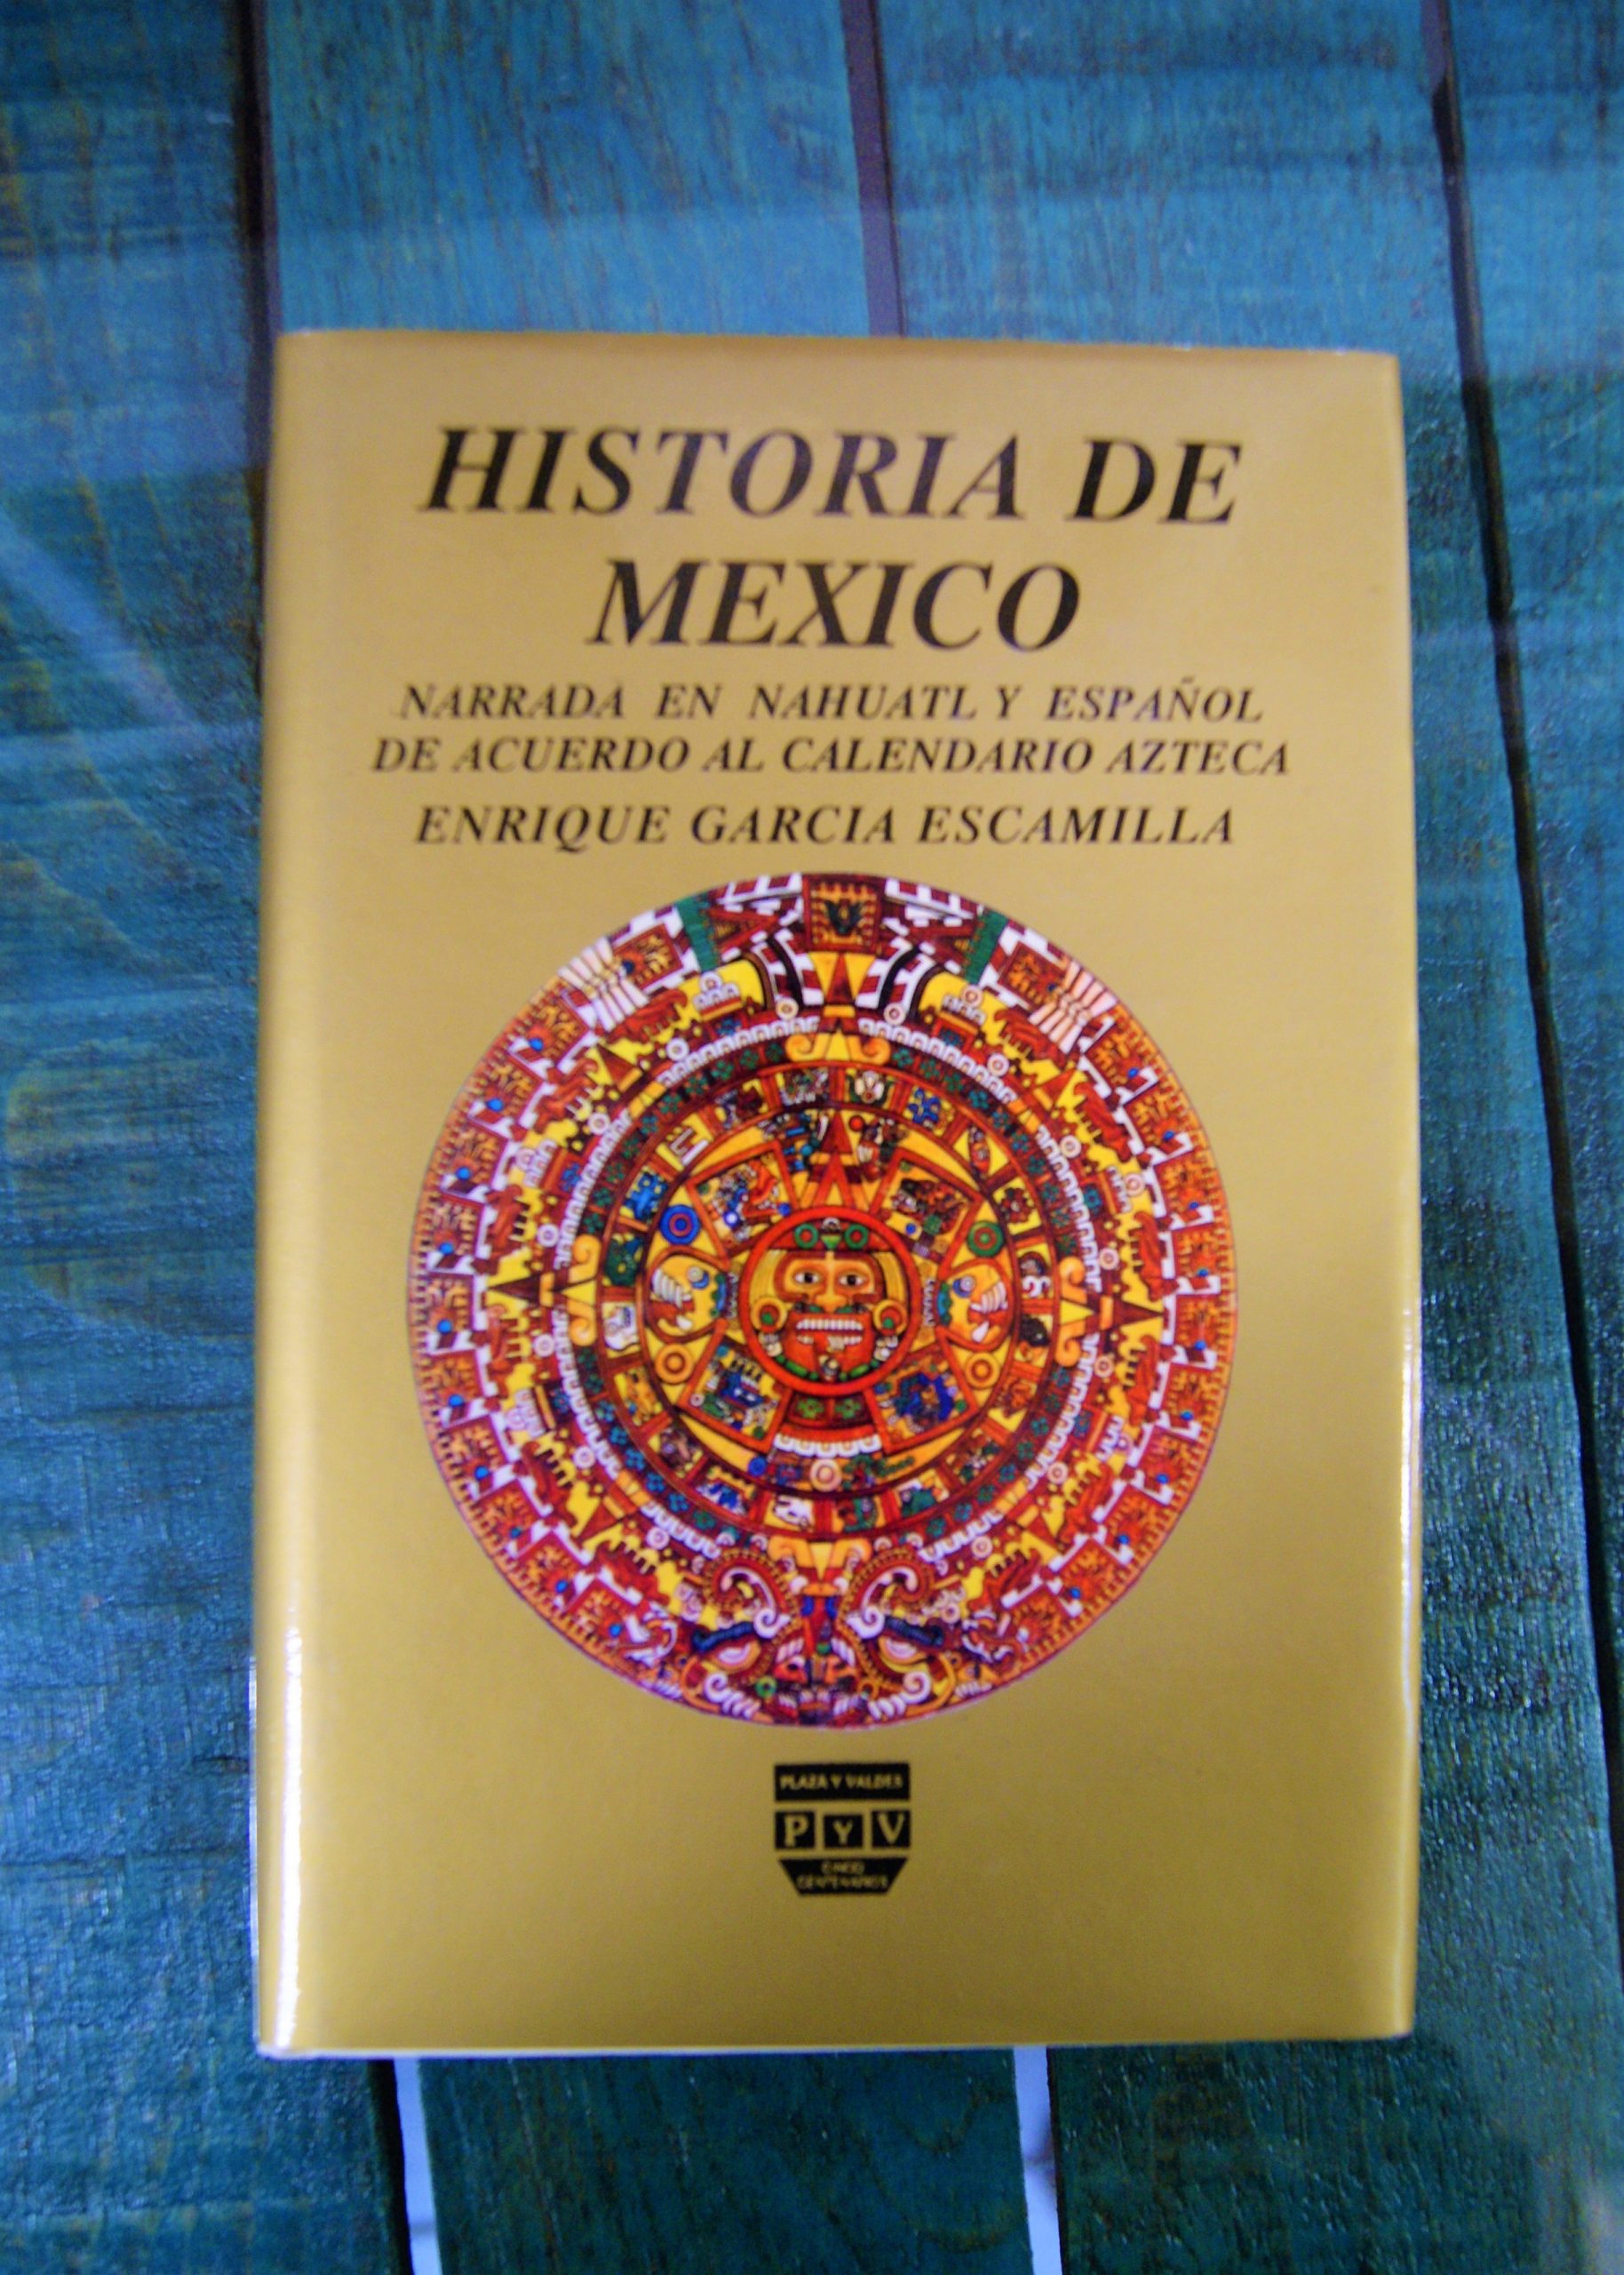 GARCÍA ESCAMILLA ENRIQUE. HISTORIA DE MÉXICO. NARRADA EN NÁHUATL Y ESPAÑOL  DE ACUERDO AL CALENDARIO AZTECA -